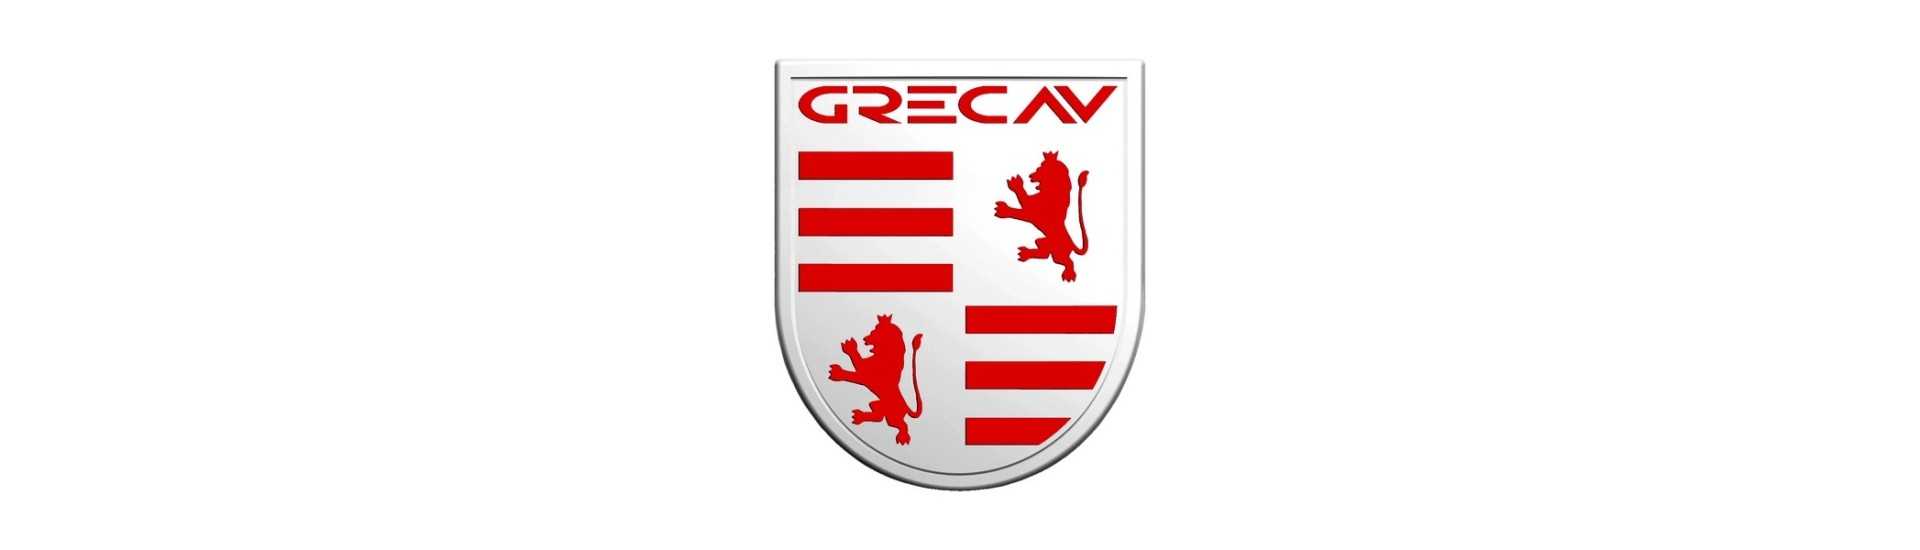 Logo et adhésif au meilleur prix pour voiture sans permis Grecav